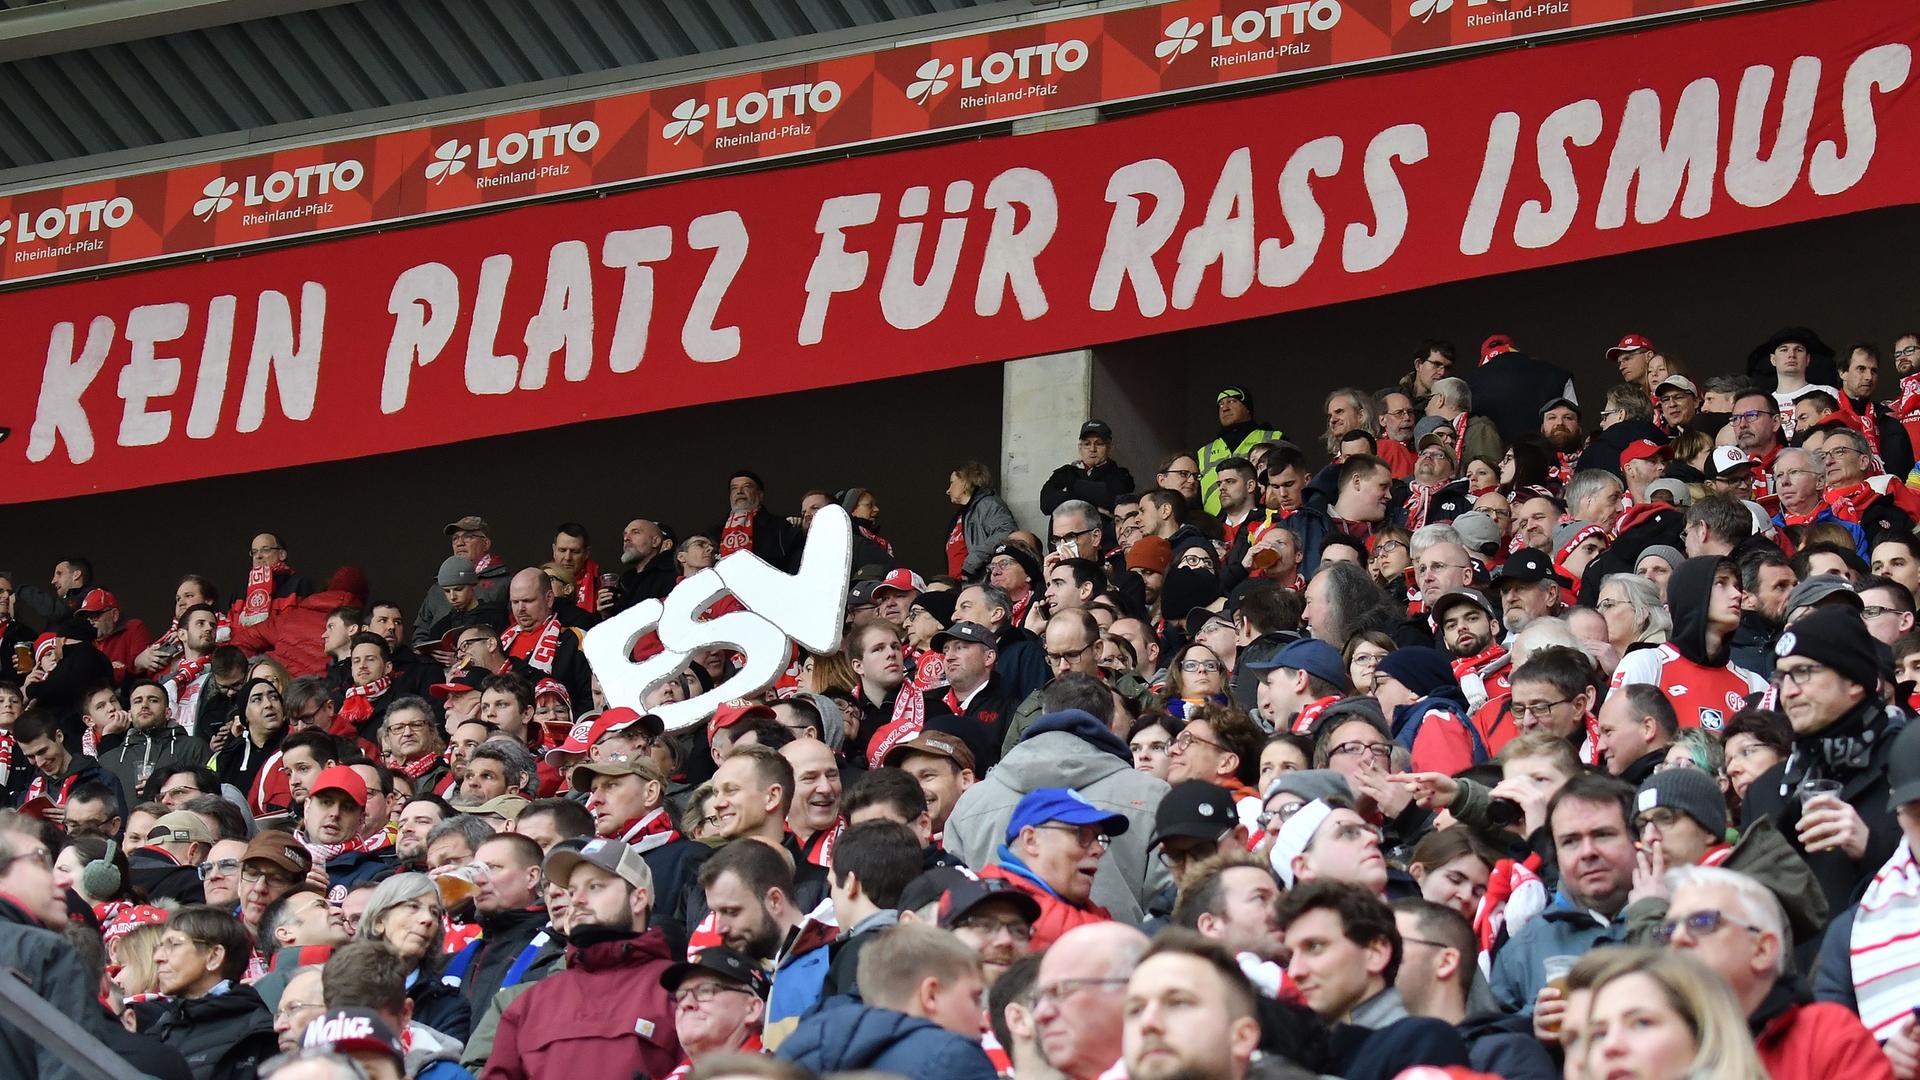 Das Foto zeigt Fußball-Fans und ein Schild mit den Worten "Kein Platz für Rassismus".